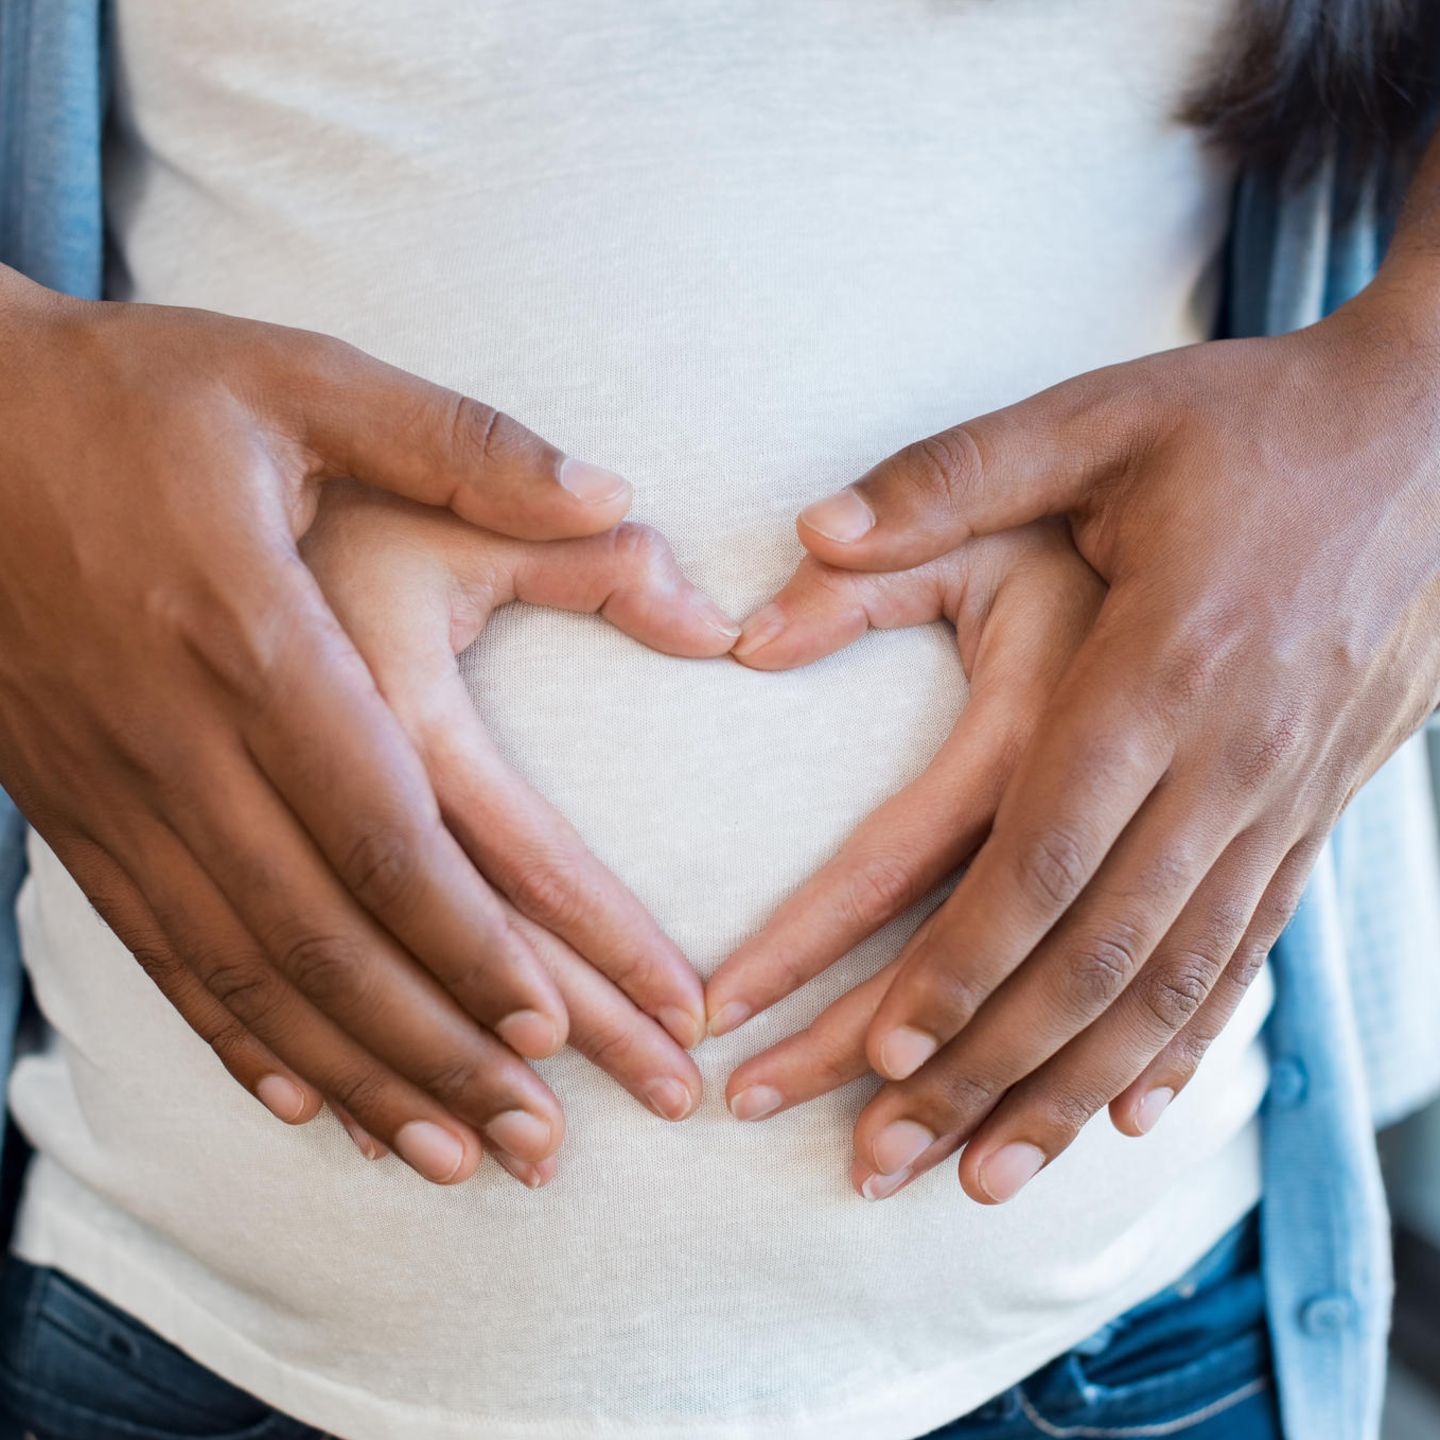 Schwanger oder nicht?: Hände auf schwangerem Bauch